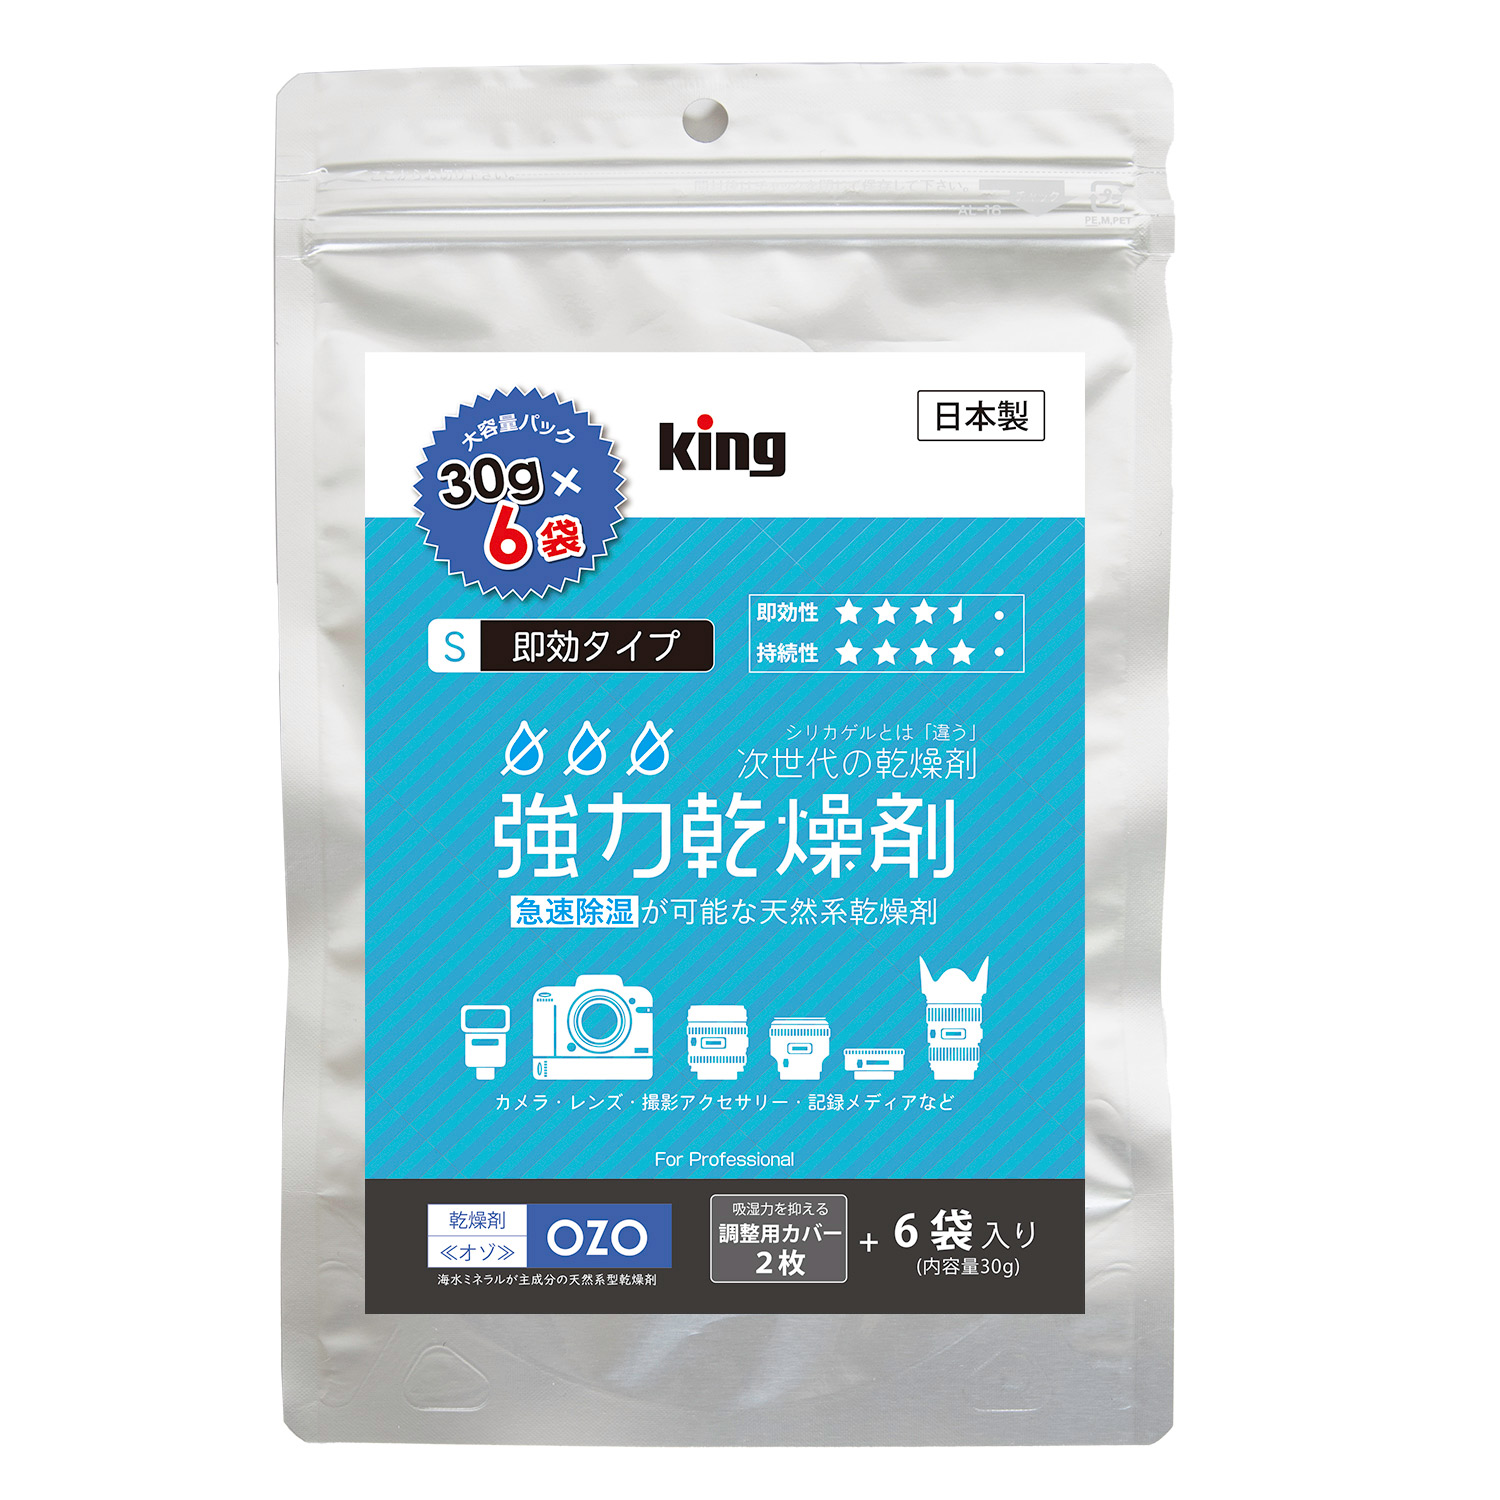 ［King］強力乾燥剤 OZO-S30 大容量パック【30g(袋)×6個入】